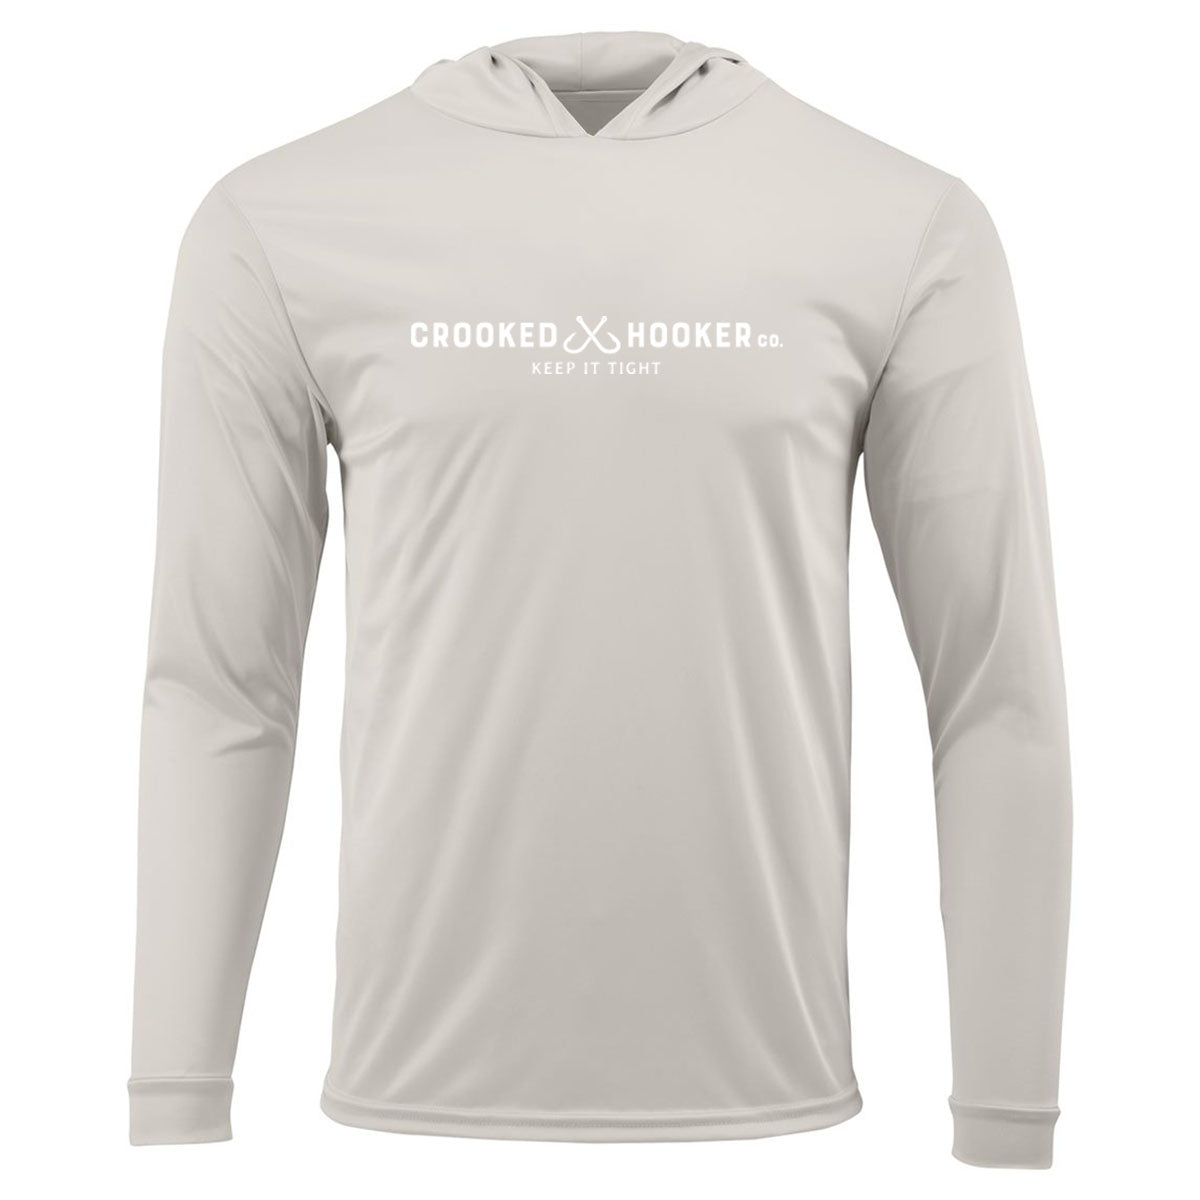 UV Long Sleeve Hooded Shirt | Seaguar